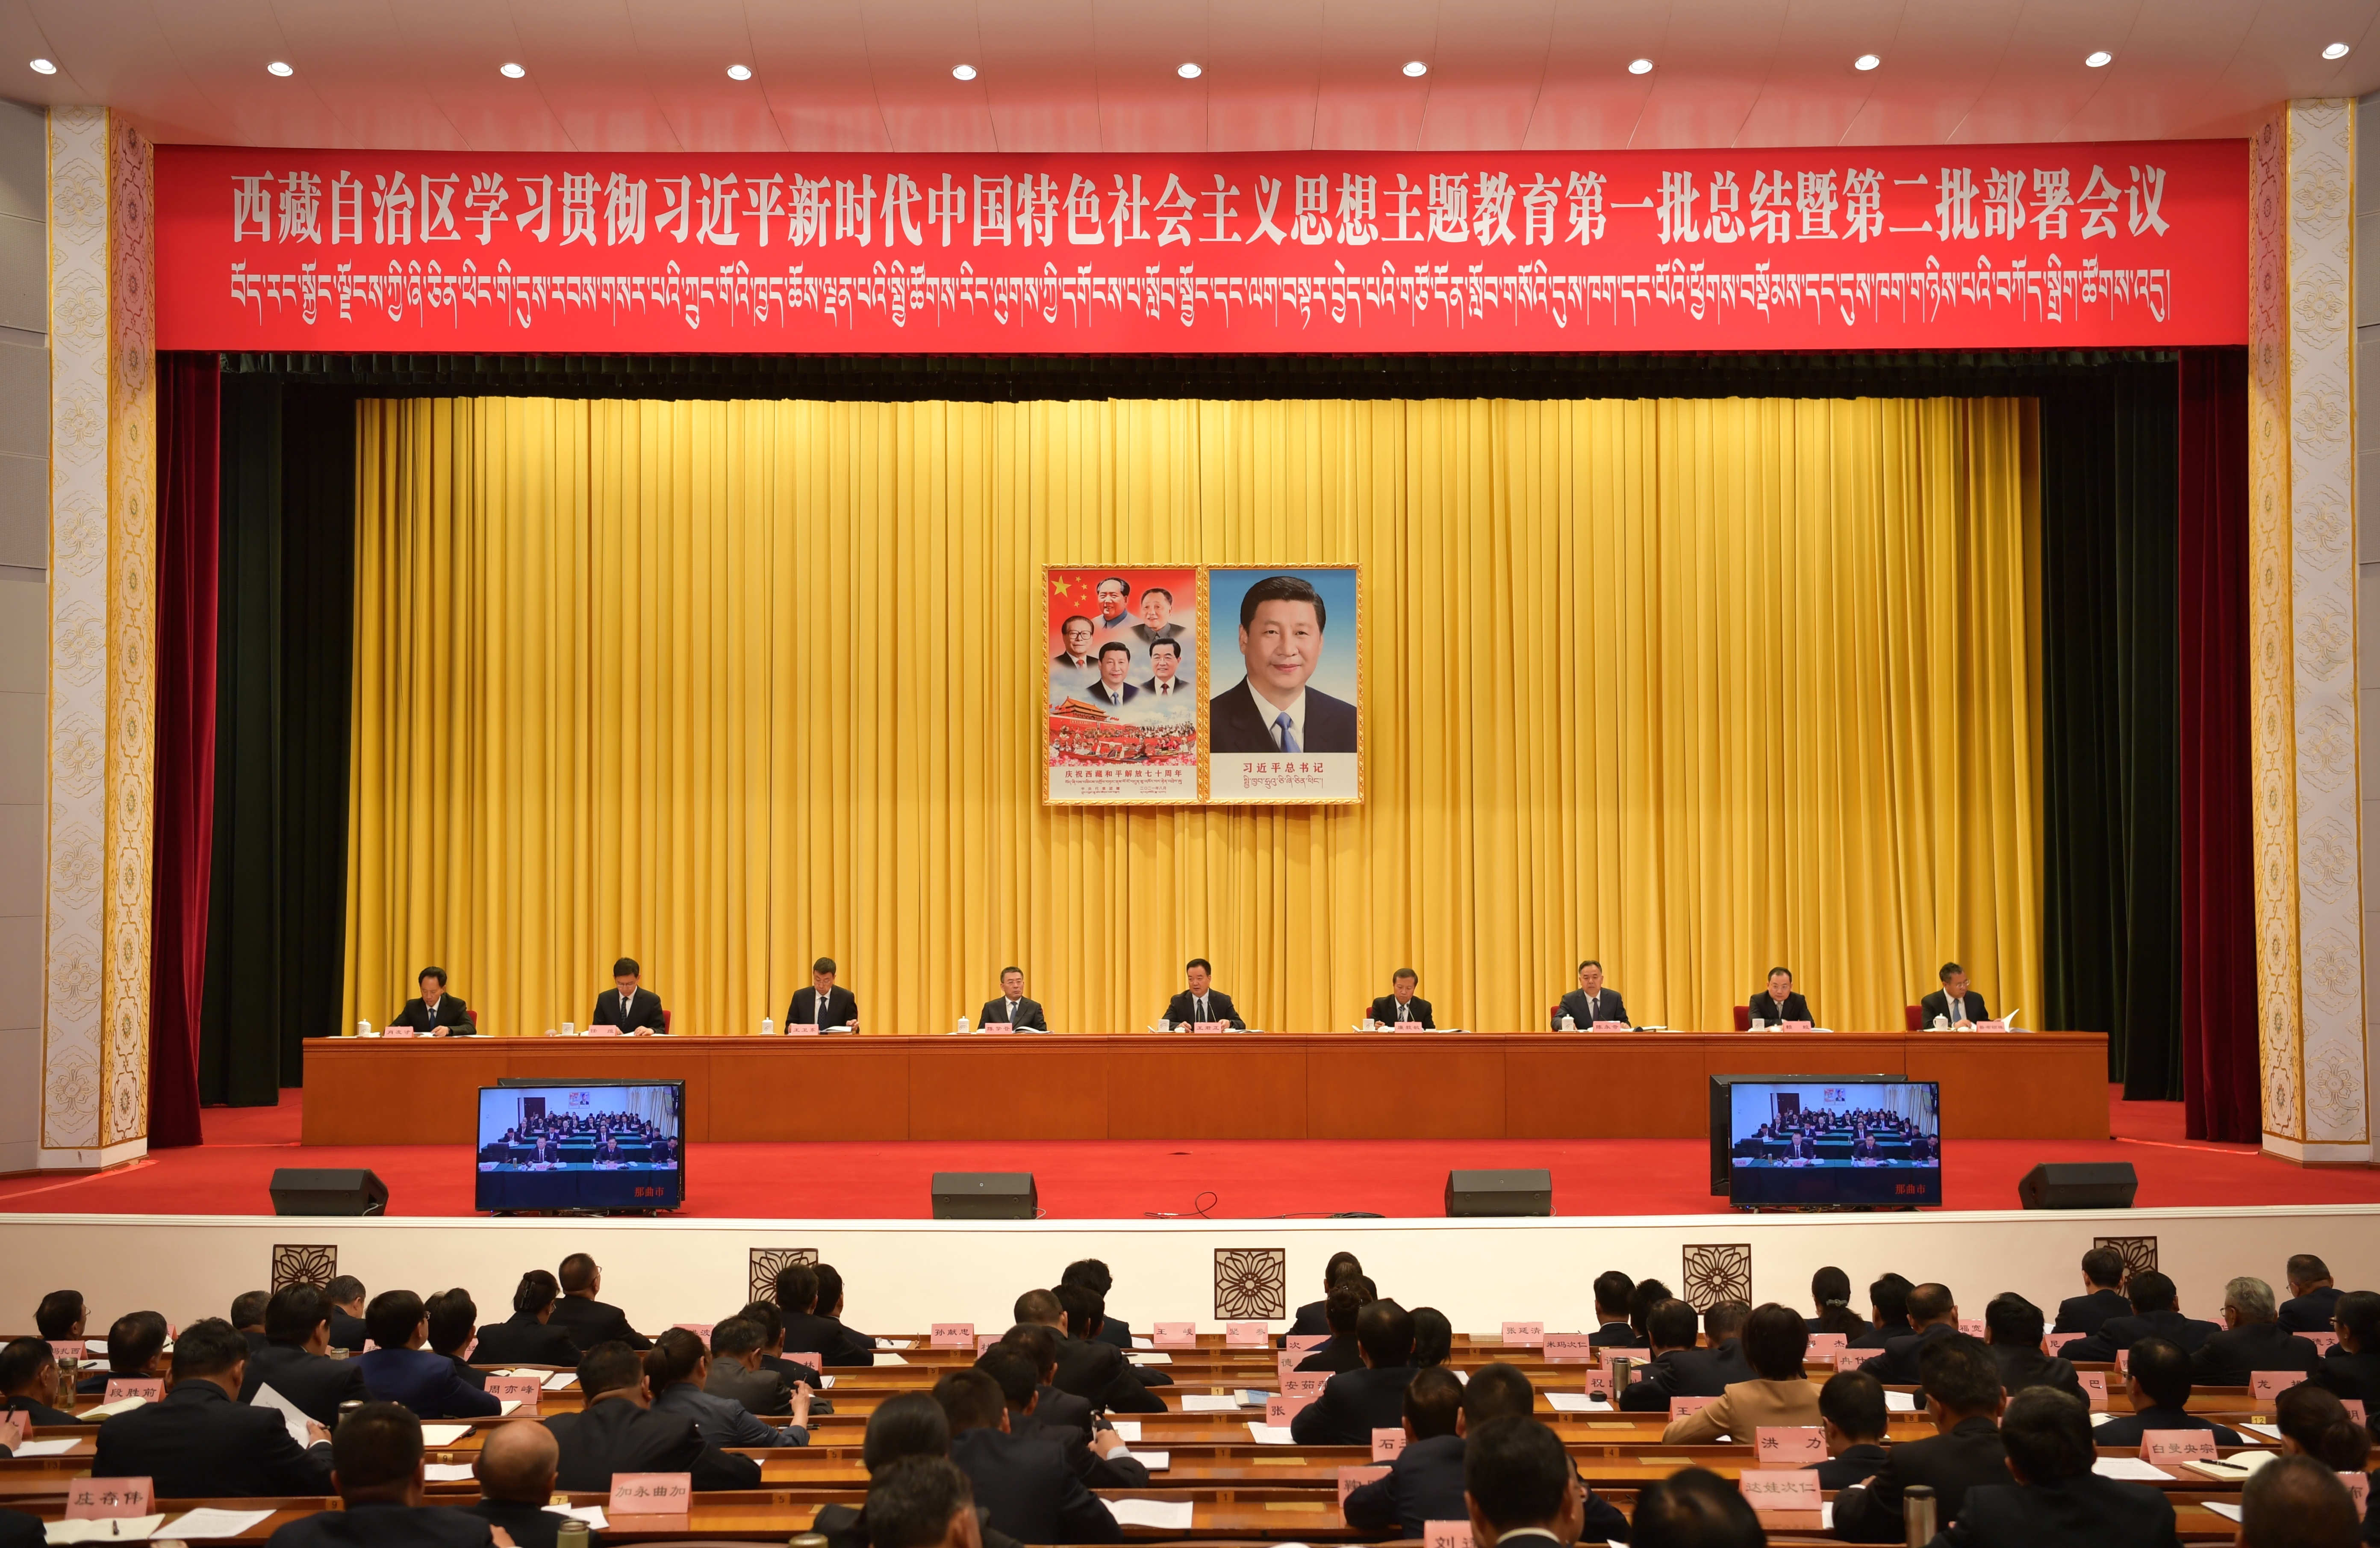 自治区学习贯彻习近平新时代中国特色社会主义思想主题教育第一批总结暨第二批部署会议召开